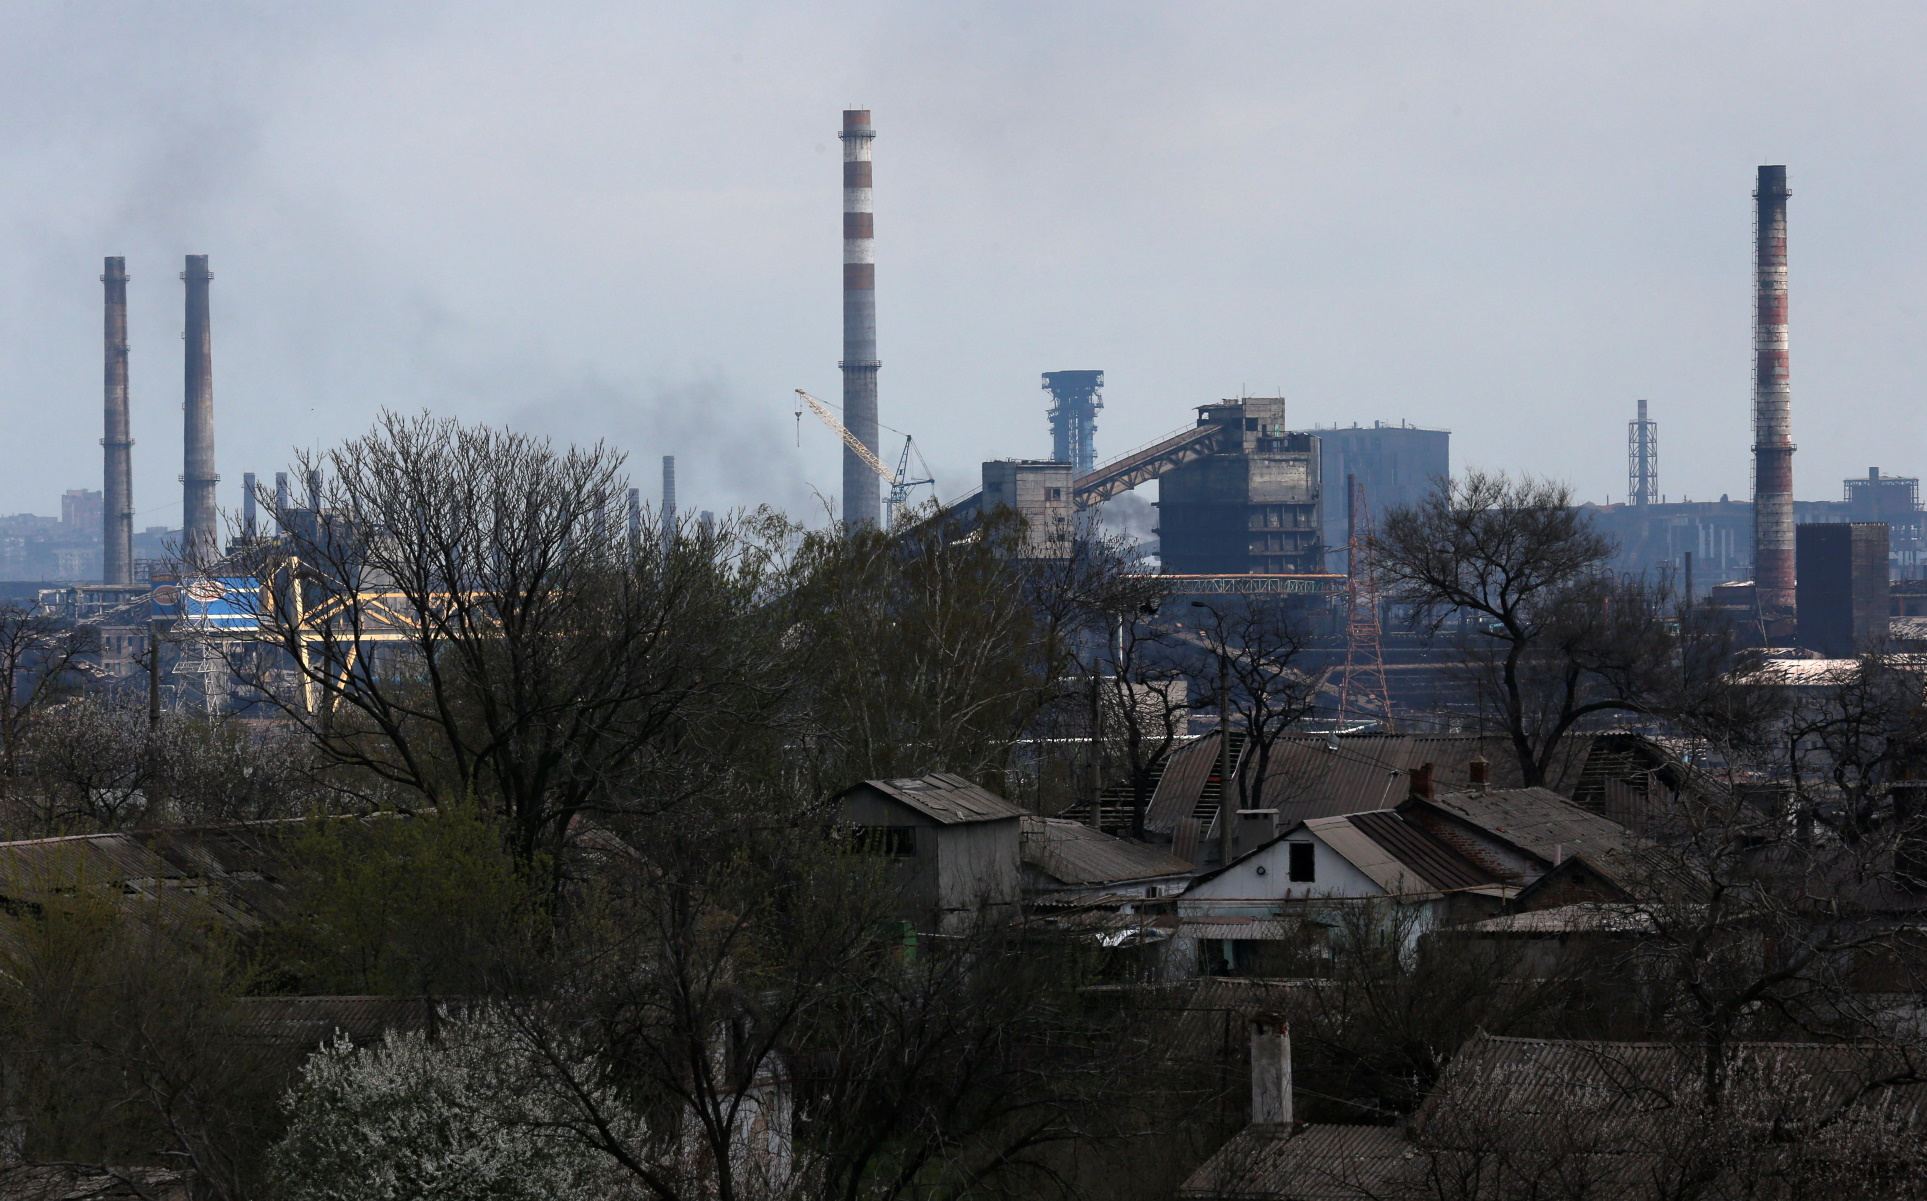 Πόλεμος στην Ουκρανία: Τελική επίθεση των Ρώσων στο εργοστάσιο Αζοφστάλ «βλέπει» ο Ζελένσκι